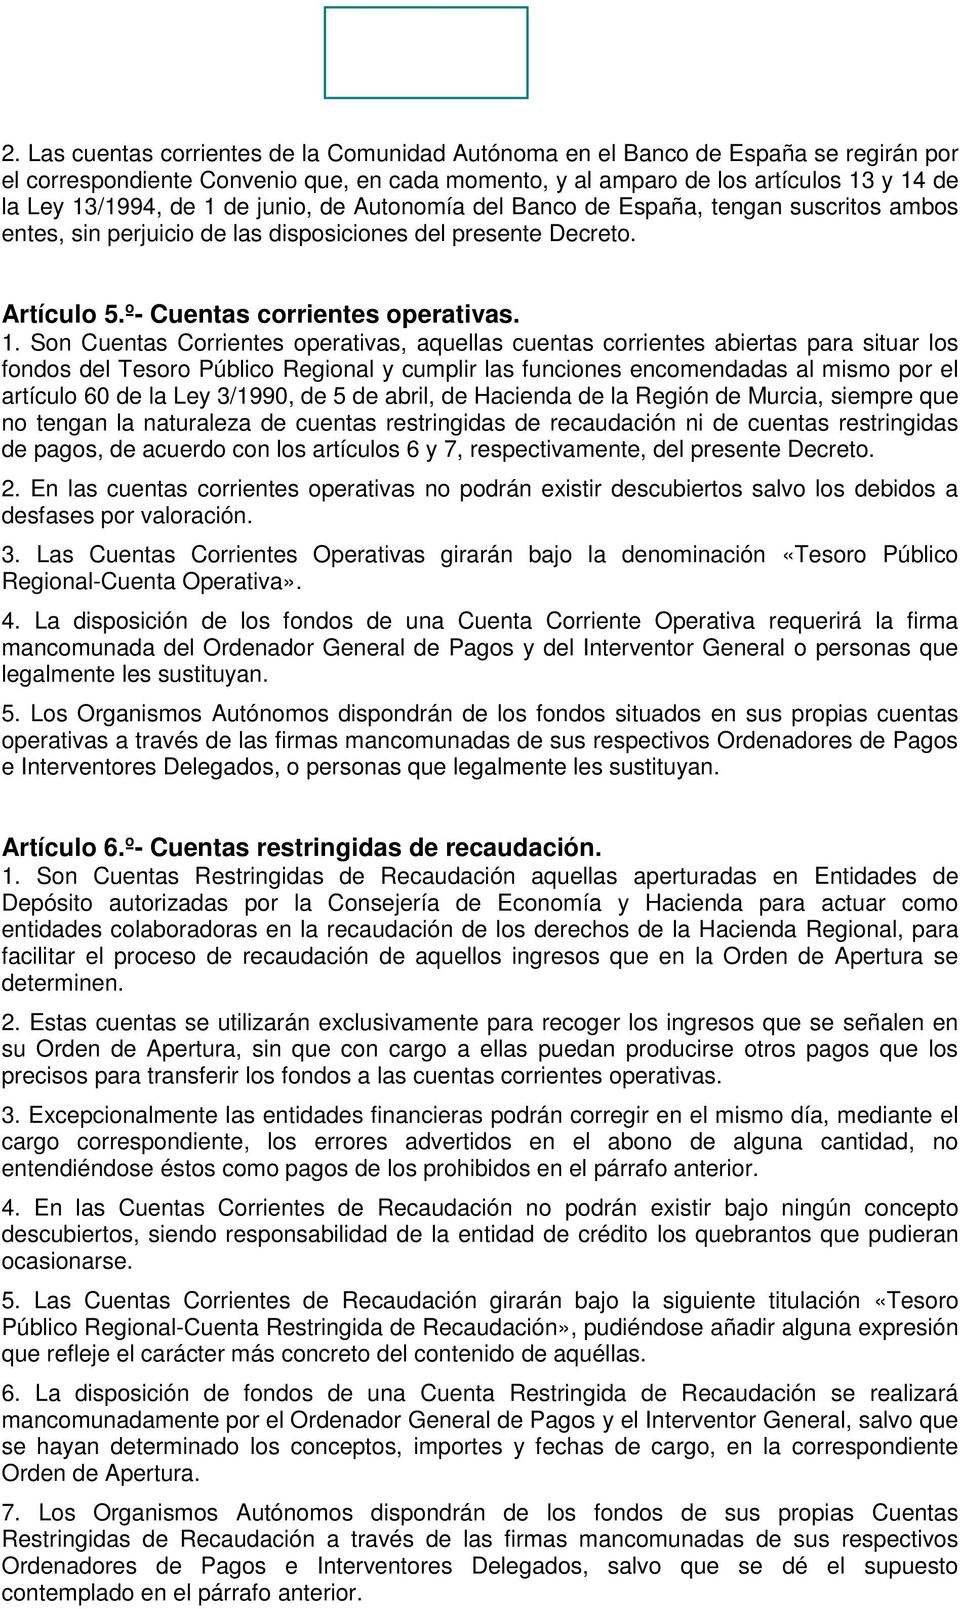 Son Cuentas Corrientes operativas, aquellas cuentas corrientes abiertas para situar los fondos del Tesoro Público Regional y cumplir las funciones encomendadas al mismo por el artículo 60 de la Ley